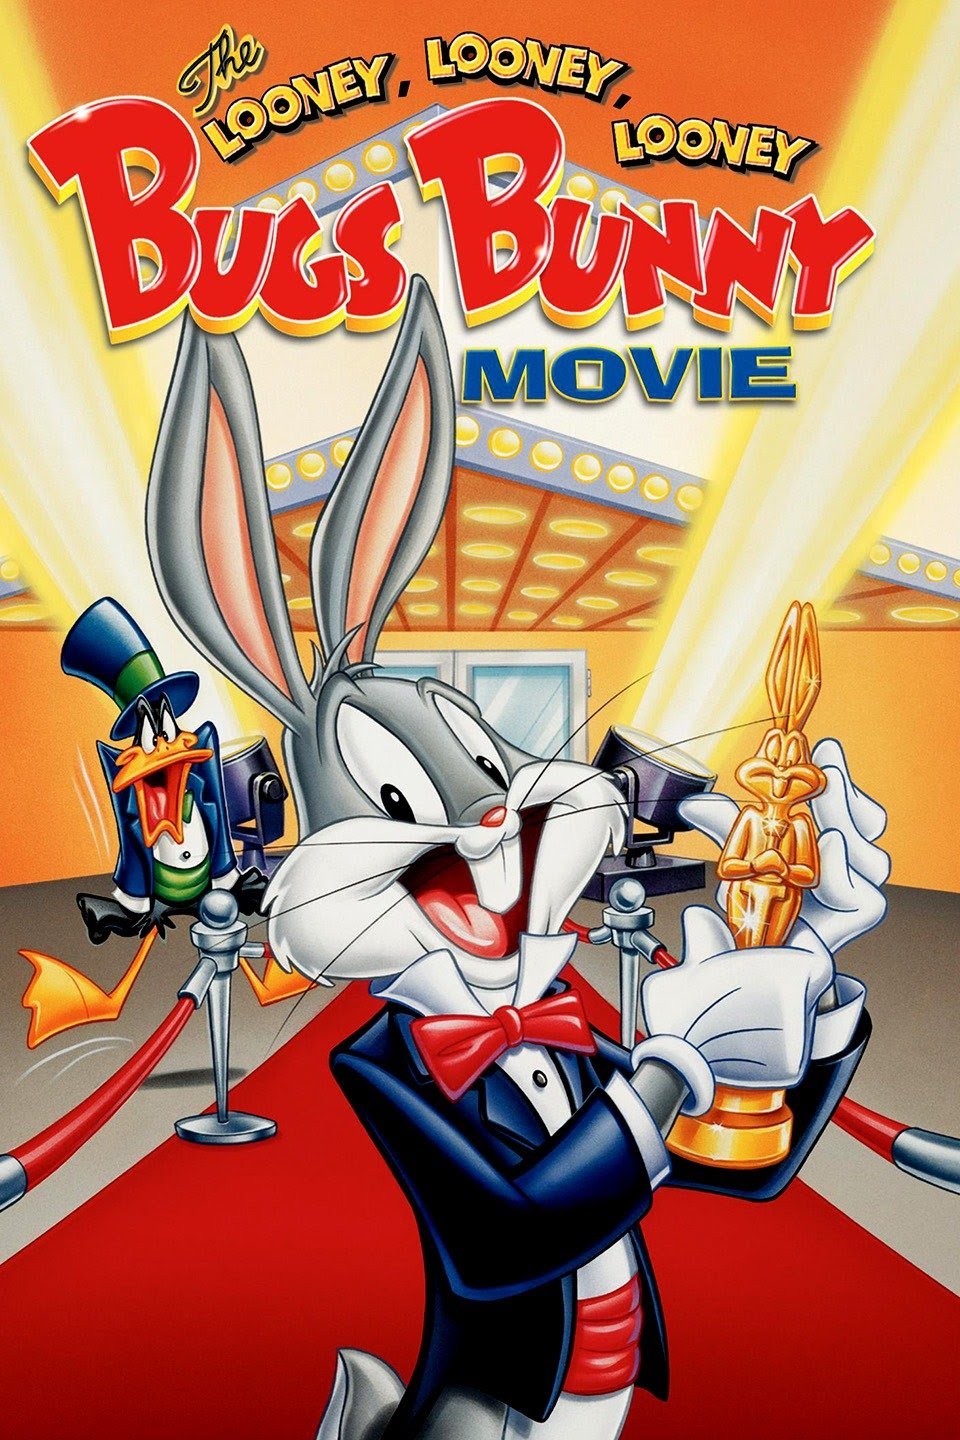 The Looney Looney Looney Bugs Bunny Movie Warner Bros image